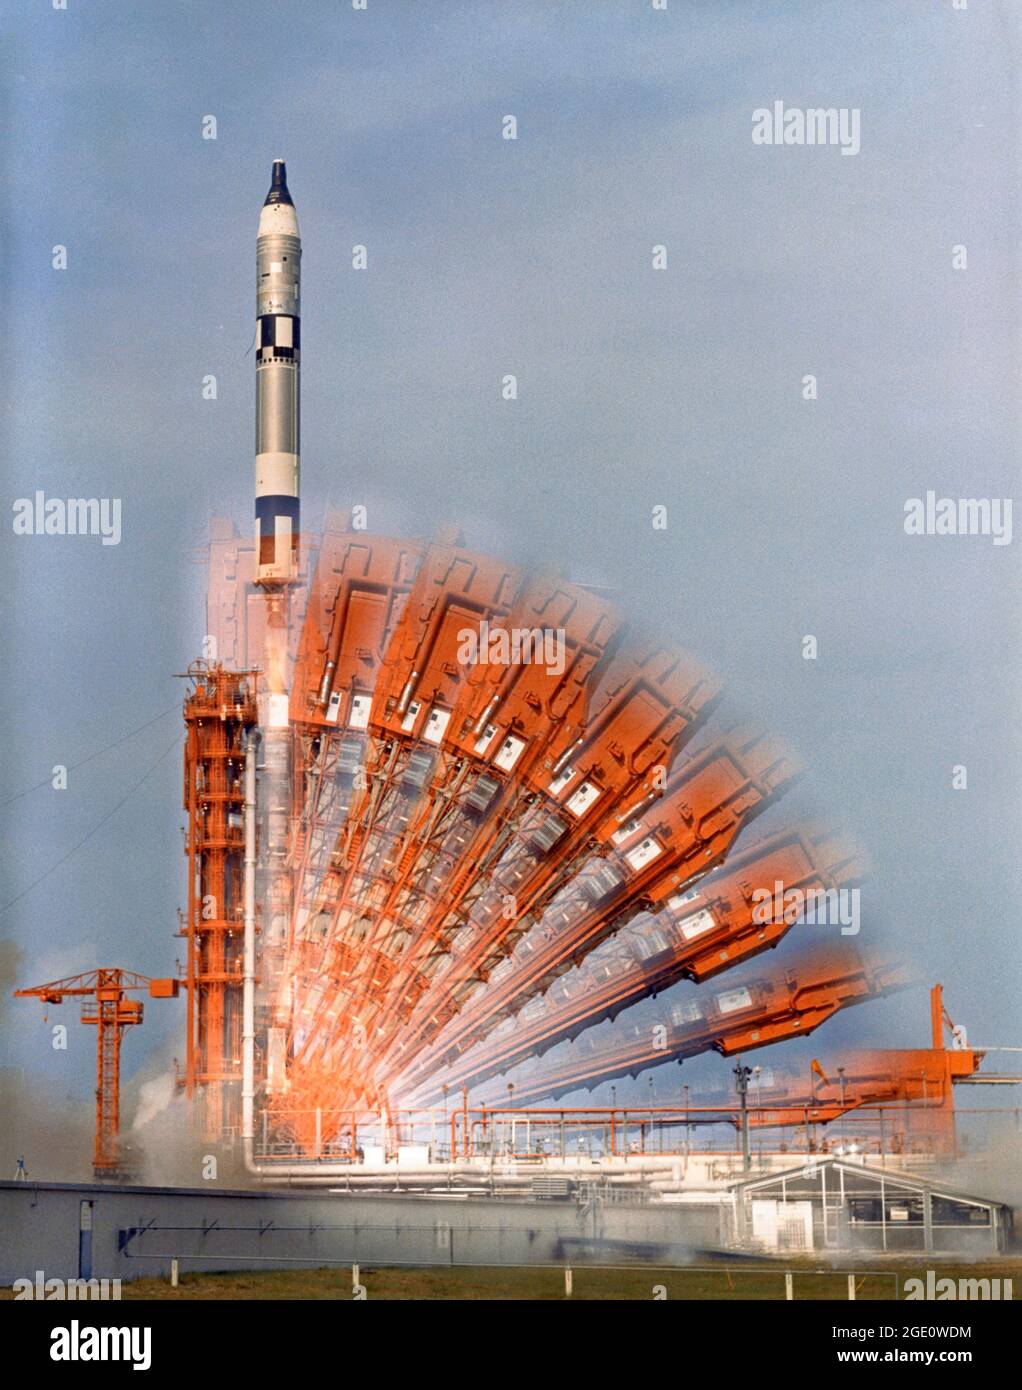 Gemini 10 Time Lapse Descrizione UNA fotografia a esposizione temporale mostra la configurazione di Pad 19 fino al lancio di Gemini 10. A bordo della navicella sono John W. Young e Michael Collins. I due astronauti passavano quasi tre giorni a praticare l'attracco con il veicolo bersaglio dell'Agenzia e a condurre una serie di esperimenti. Foto Stock